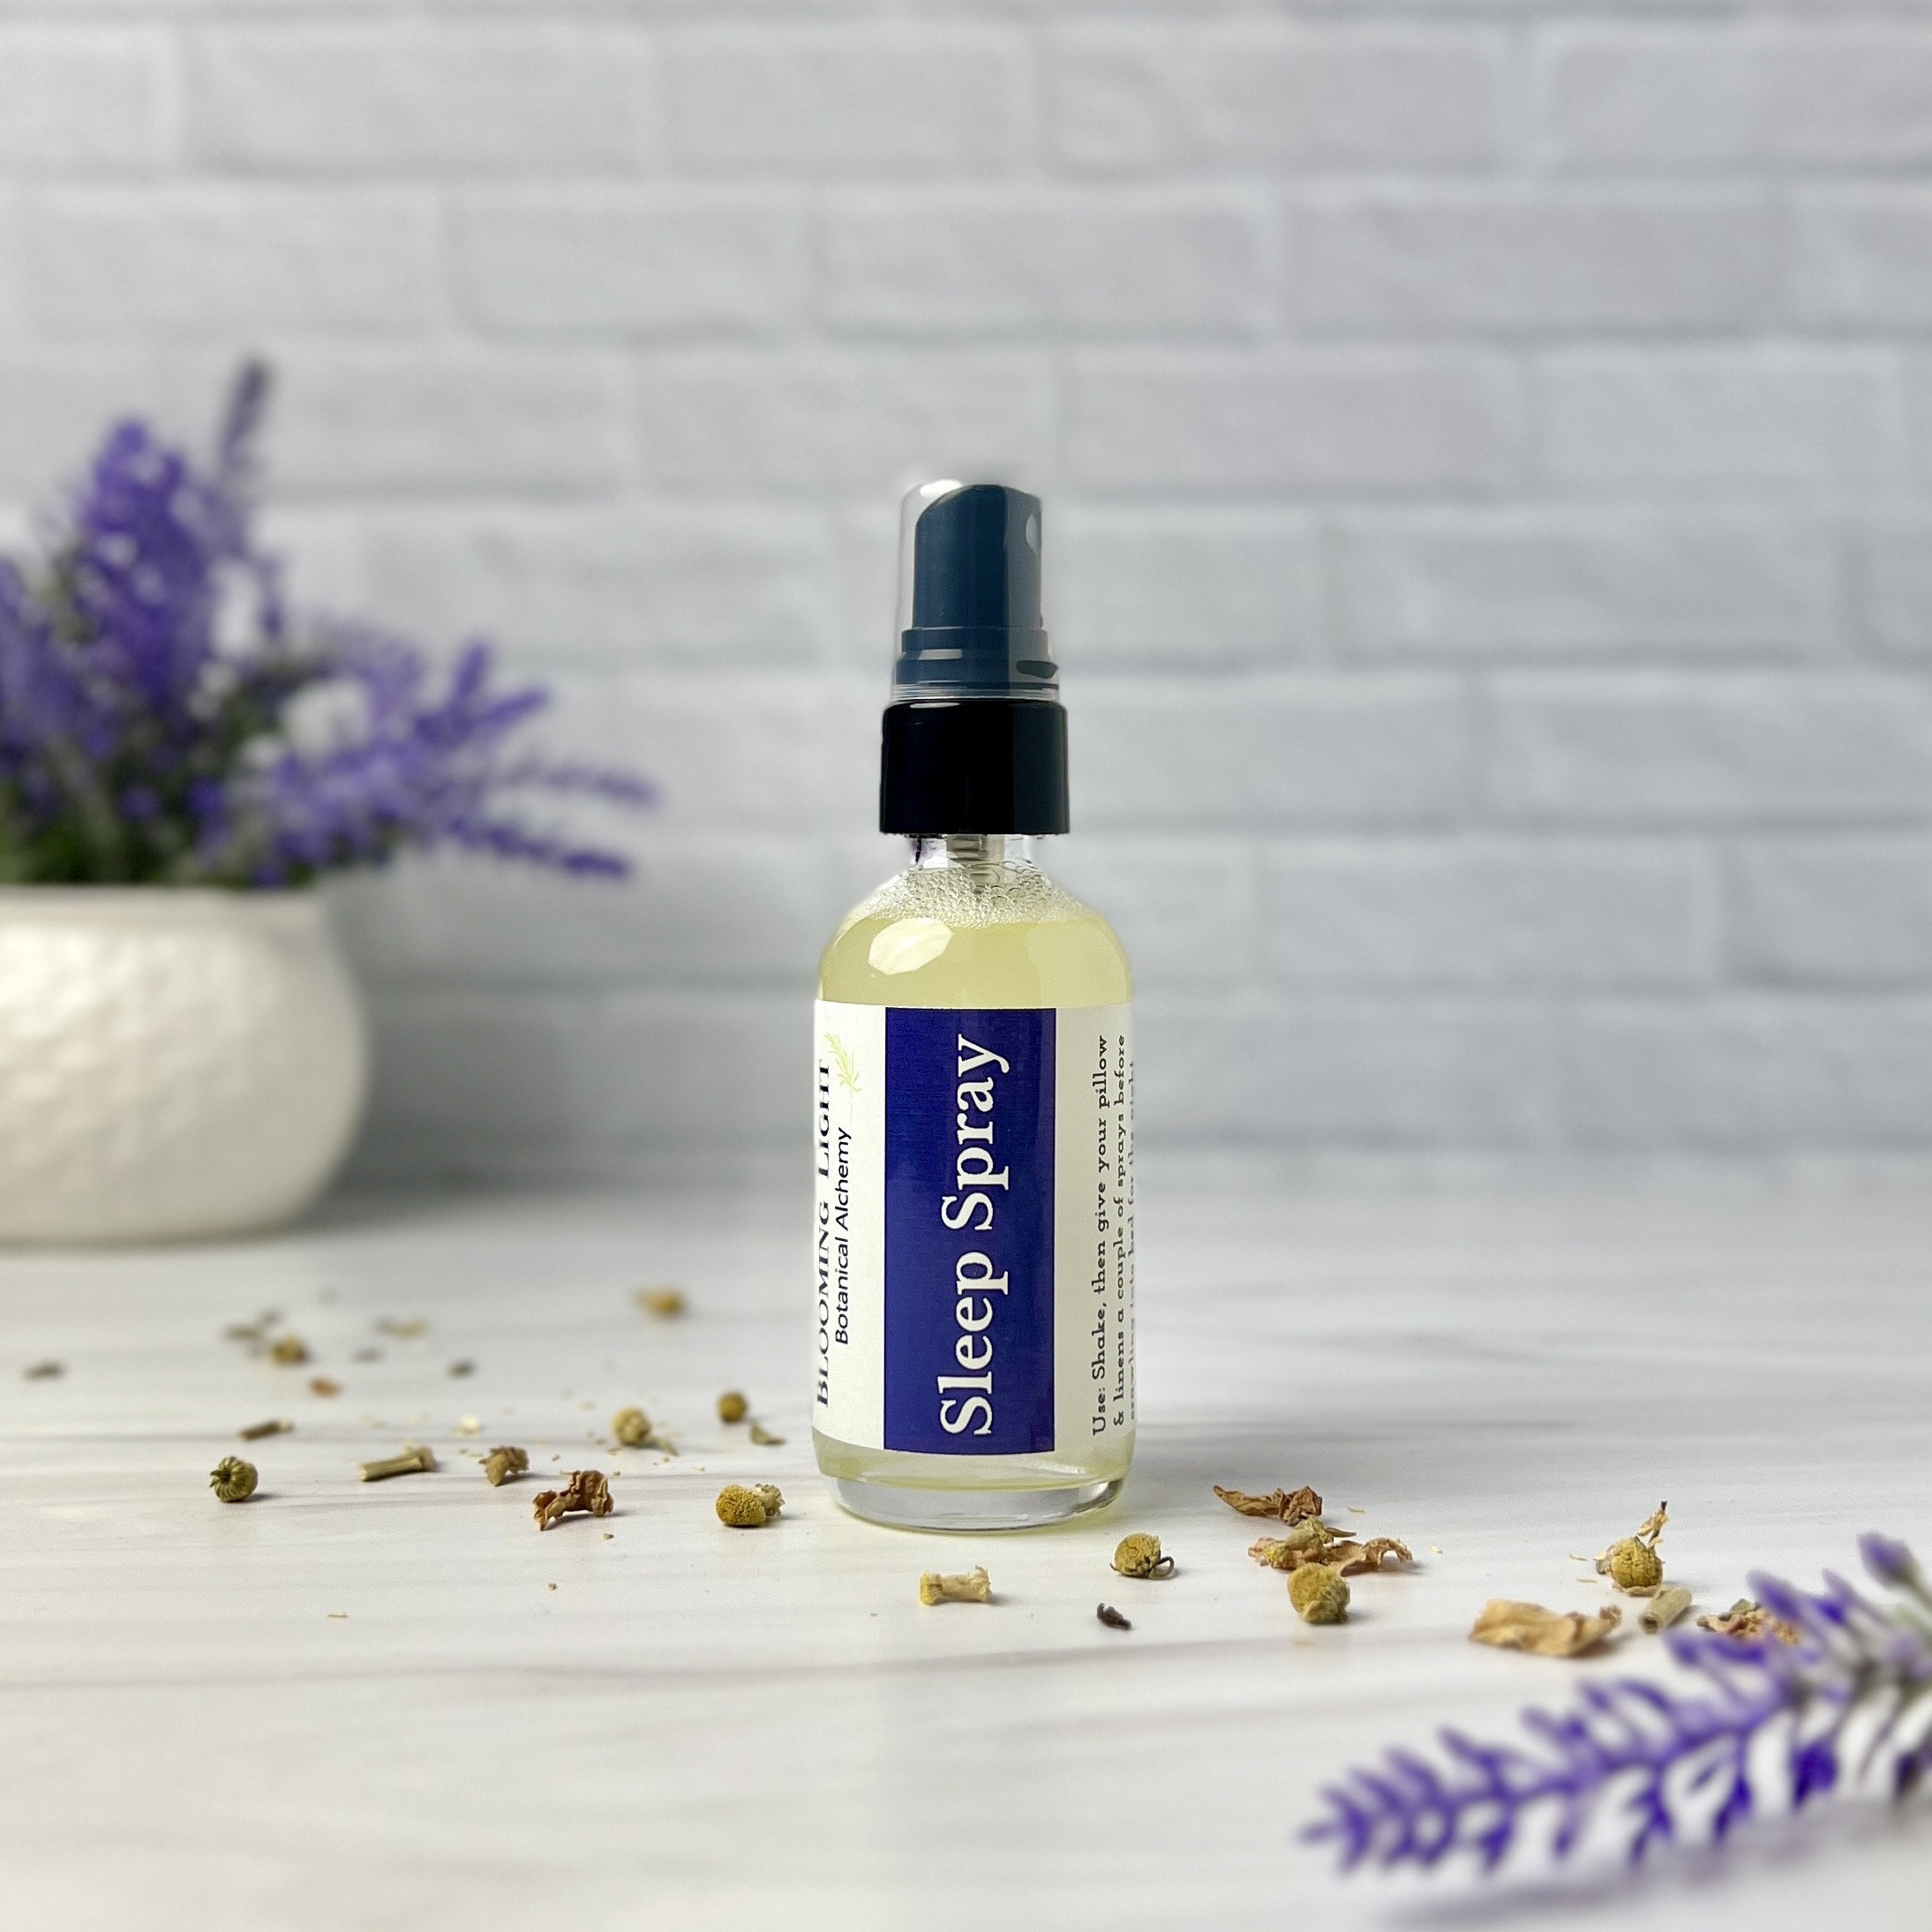 Lavender & Eucalyptus Sleep Spray, Room Fragrance, Pillow Mist 50ml  /aromatherapy Pillow Spray, Essential Oils, Sleep Aid, Home Fragrance -   Hong Kong